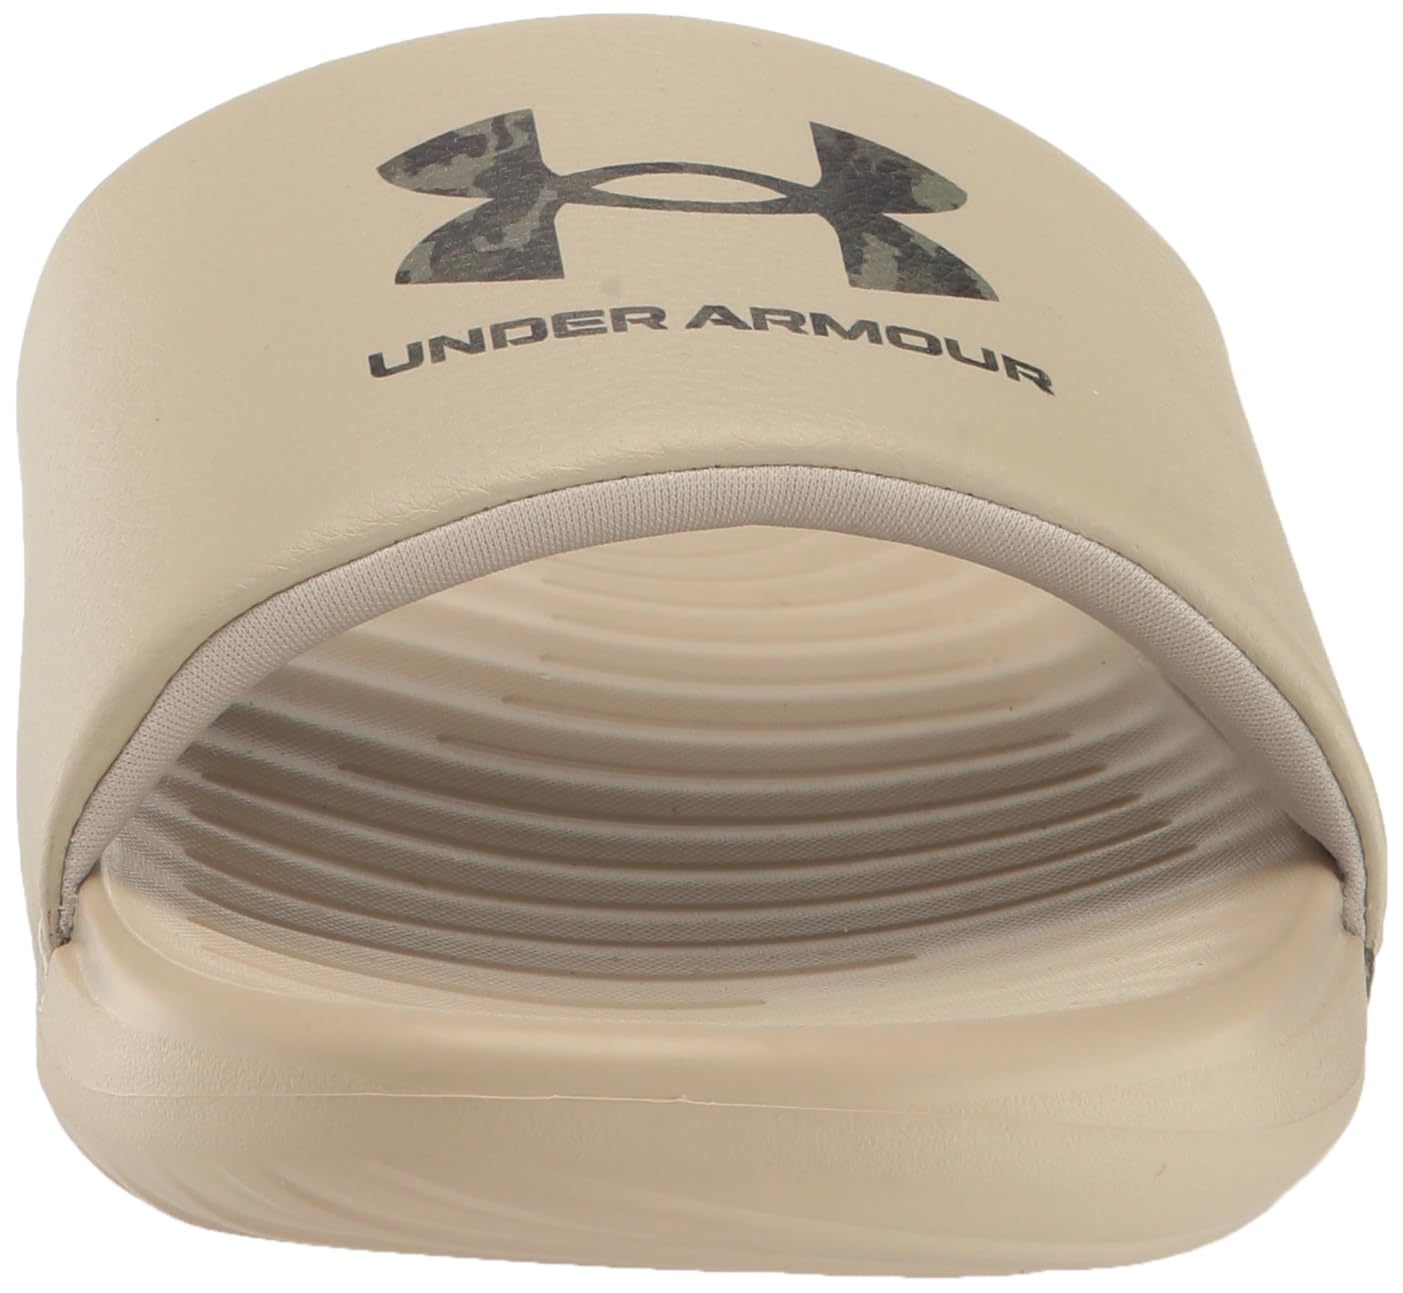 Under Armour Men's Ansa Graphic Logo Fixed Strap Slide Sandal